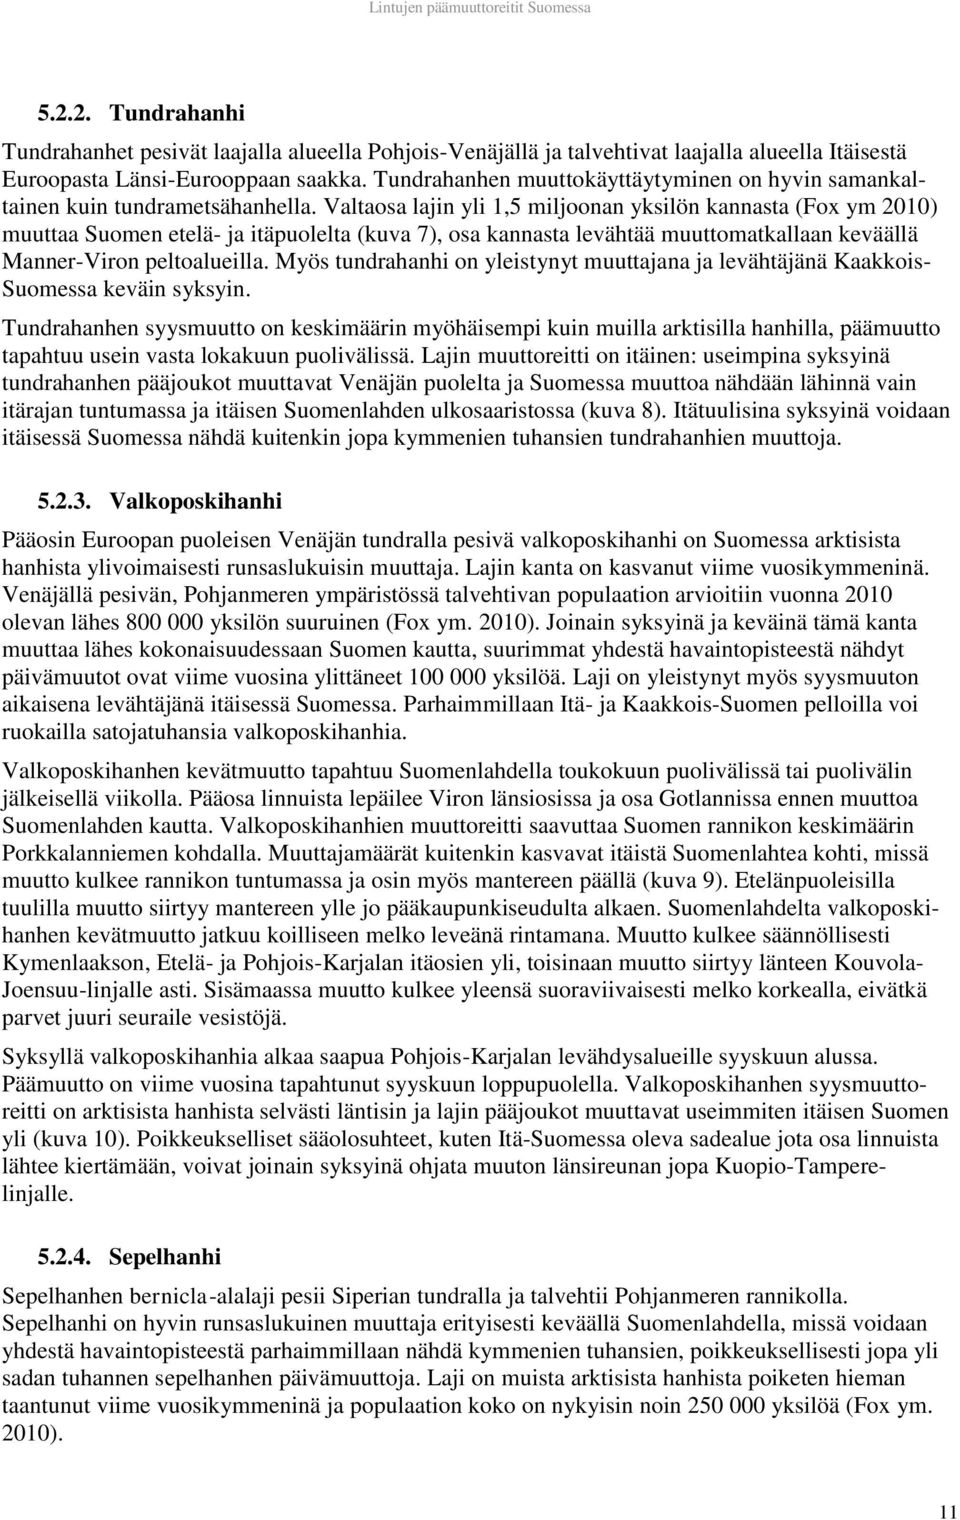 Valtaosa lajin yli 1,5 miljoonan yksilön kannasta (Fox ym 2010) muuttaa Suomen etelä- ja itäpuolelta (kuva 7), osa kannasta levähtää muuttomatkallaan keväällä Manner-Viron peltoalueilla.